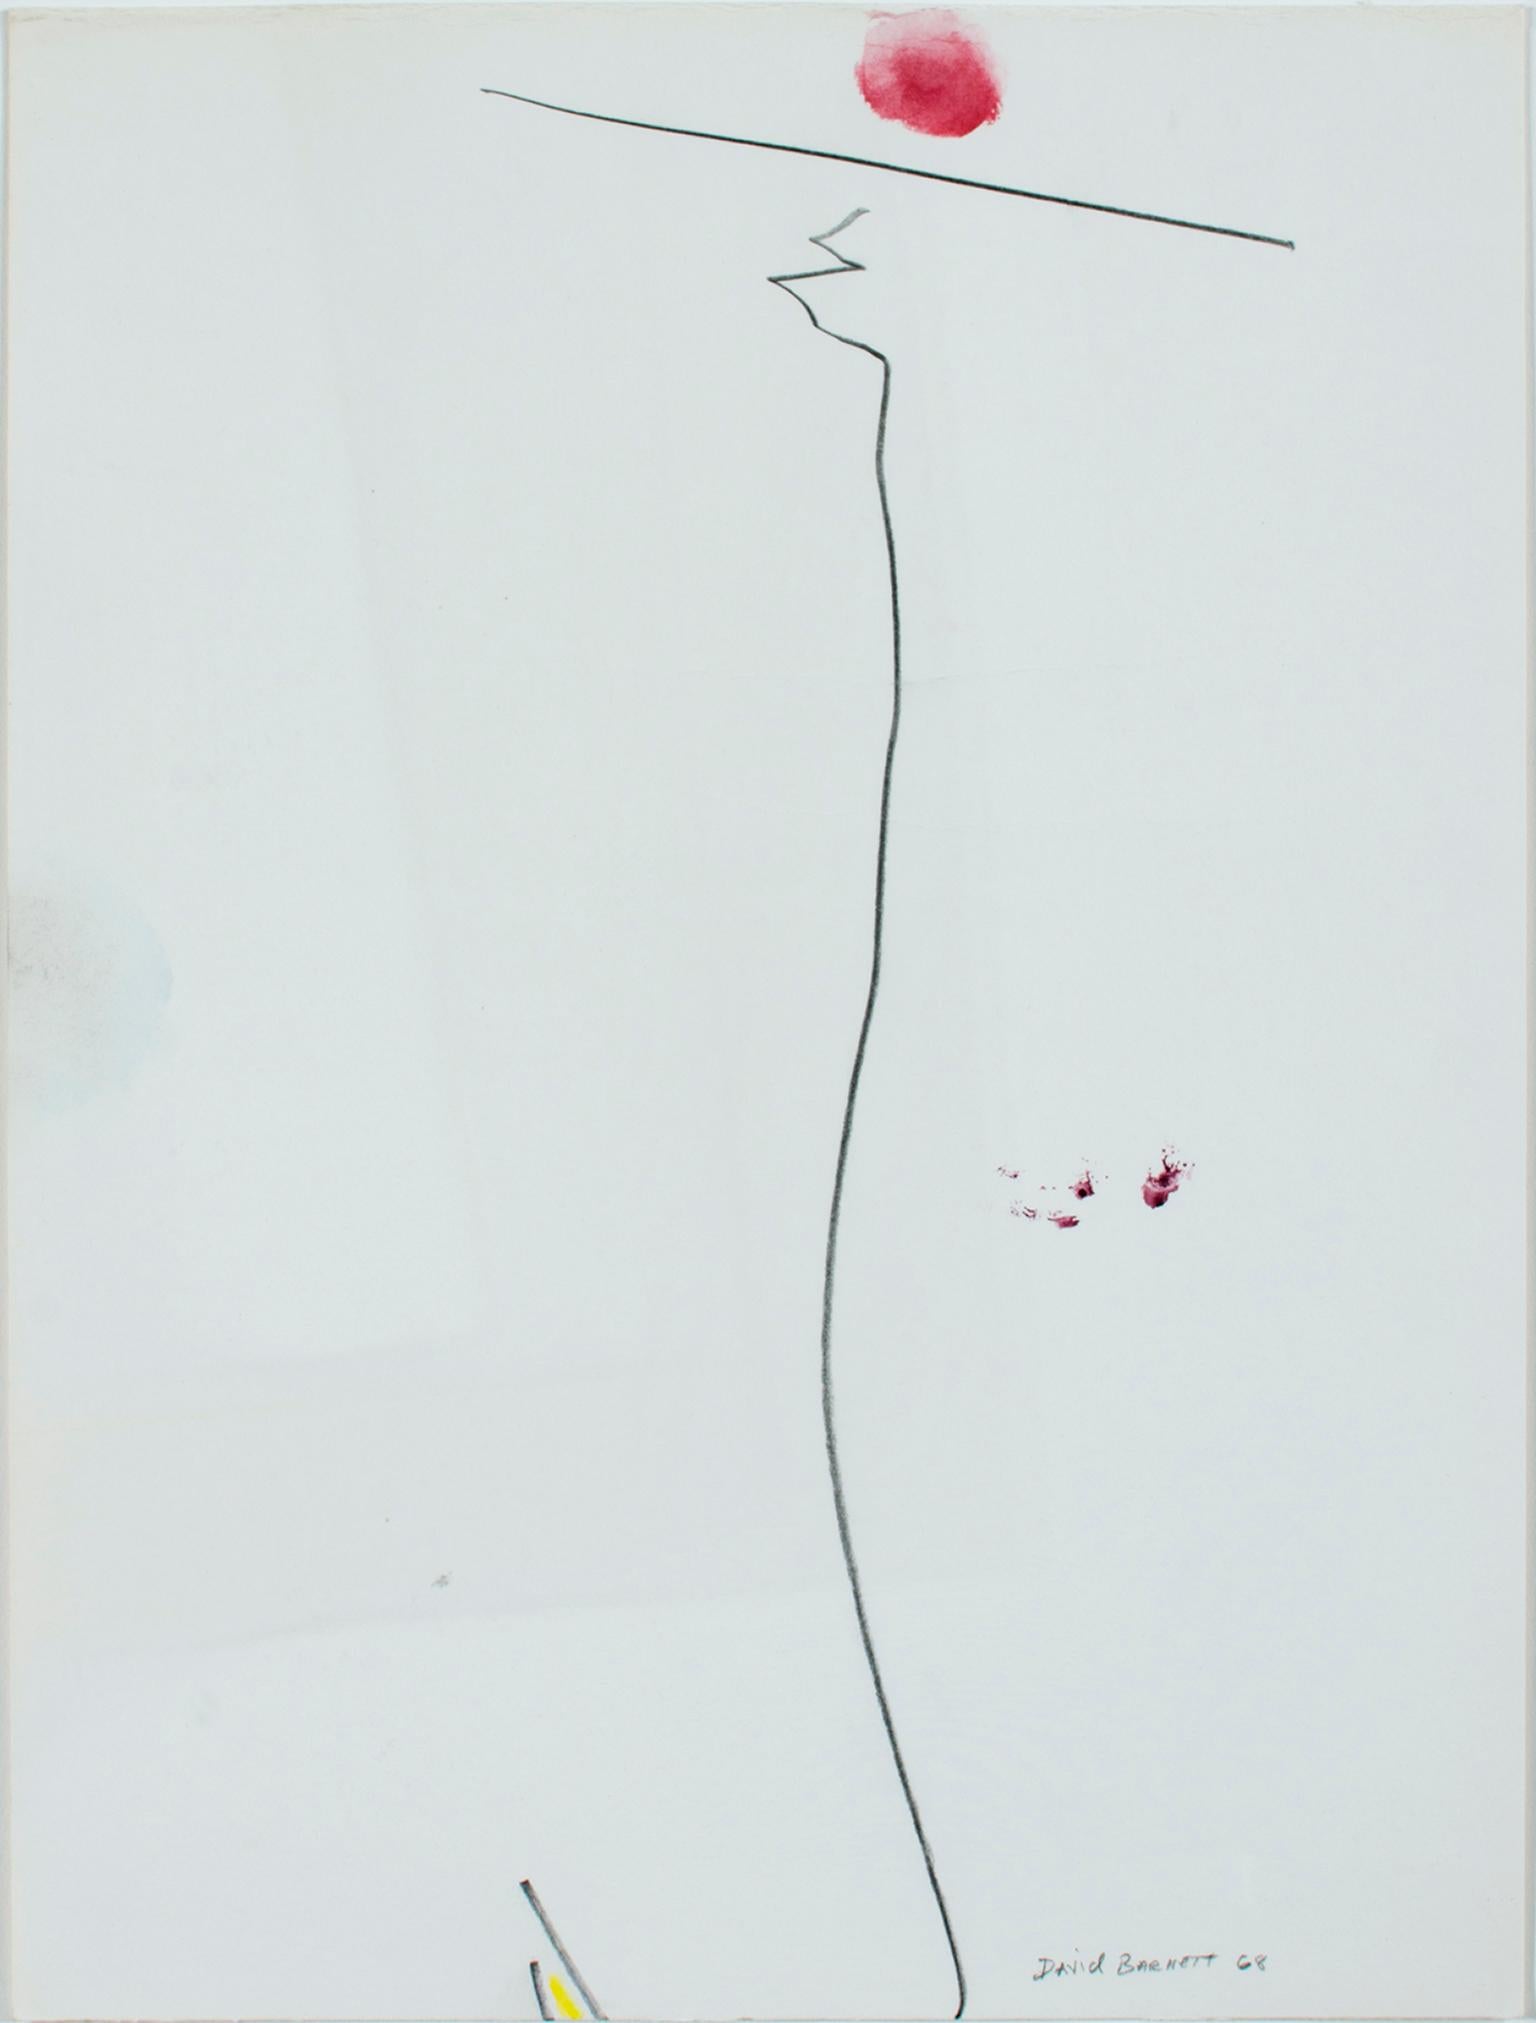 "Spacial Balance" est une série de quatre œuvres de David Barnett à l'aquarelle et au crayon, toutes signées "David Barnett '68". Chacune est une expérience différente en matière de ligne, de couleur et d'équilibre.

Équilibre spatial I : 14" x